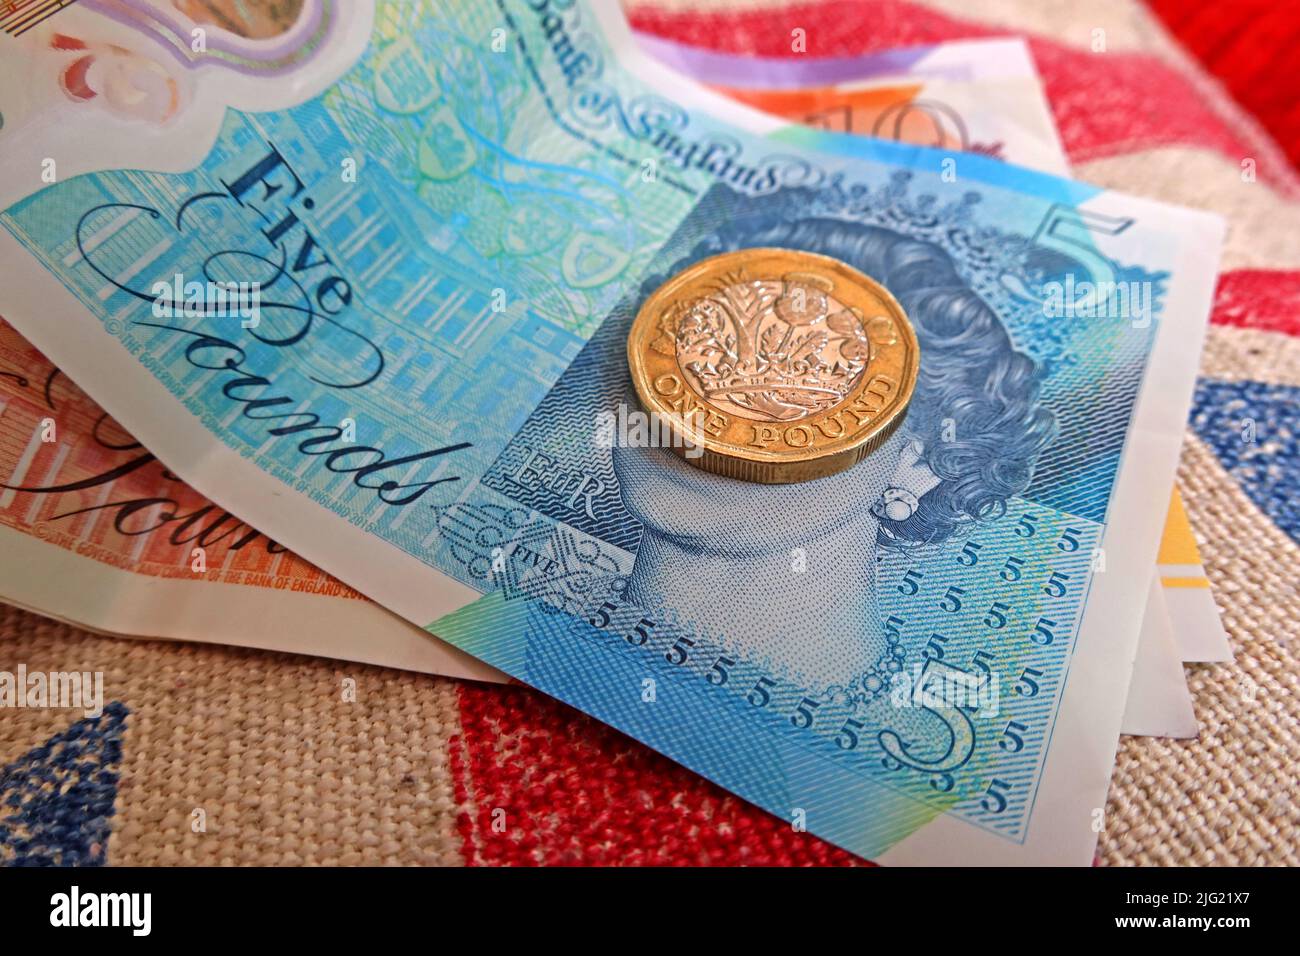 Billets de livre sterling, banque d'Angleterre et pièces de livre sur un drapeau de jack d'Union - coût de la vie crise, au Royaume-Uni / GB Banque D'Images